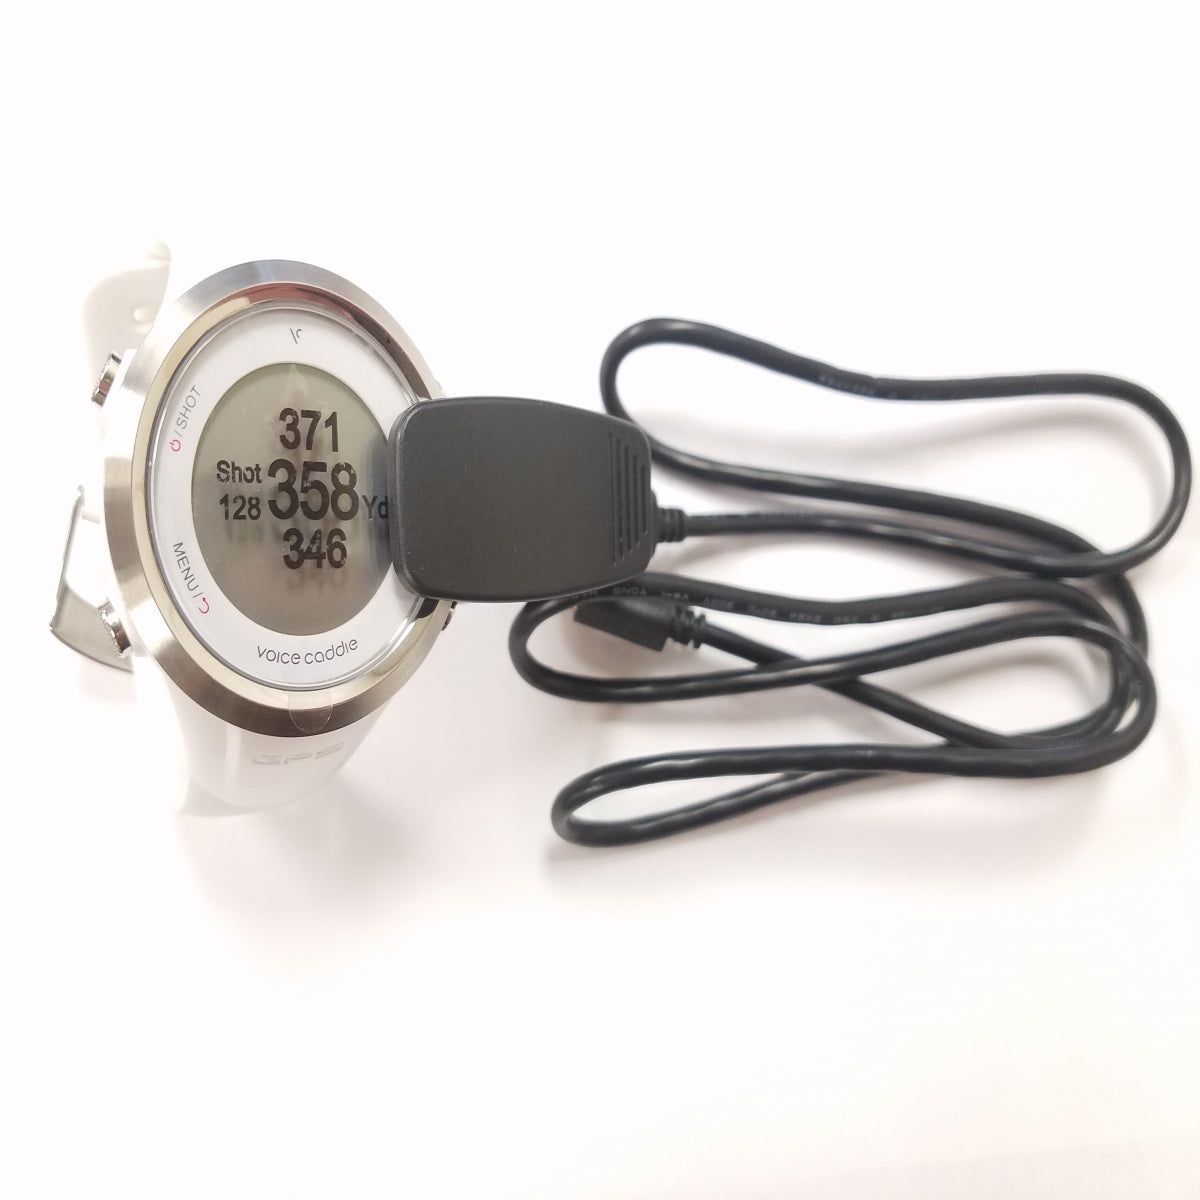 voice caddie t2 golf watch charging adapter